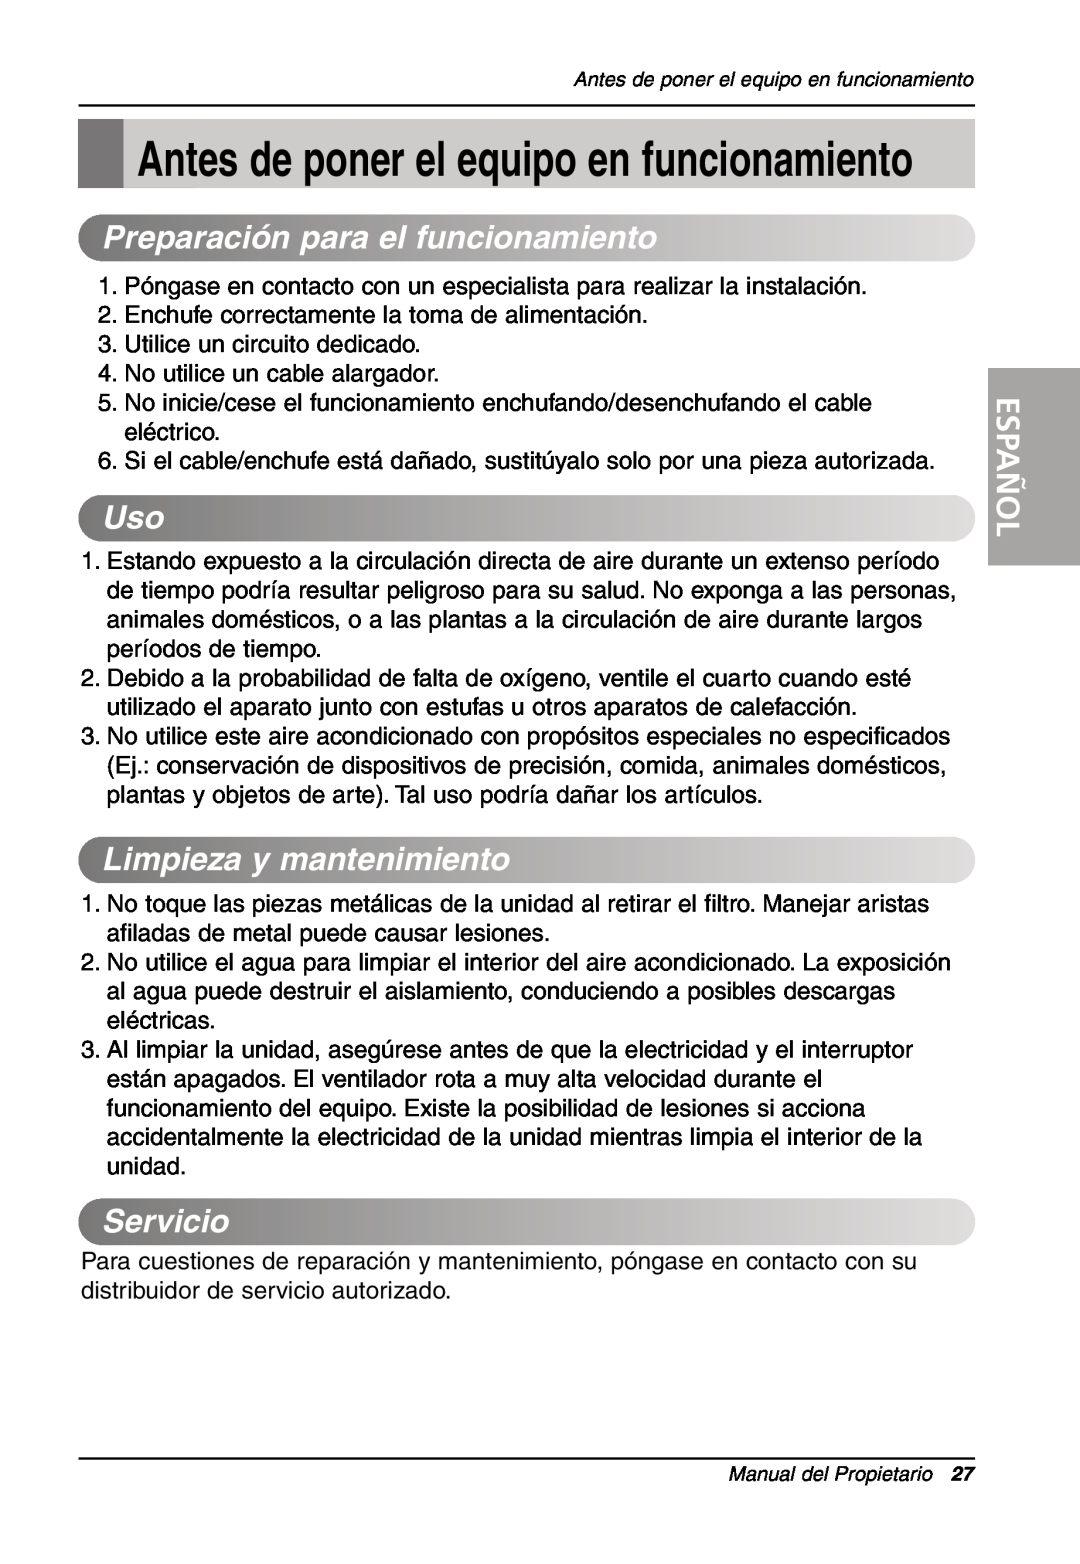 LG Electronics LW701 HR owner manual Antes de poner el equipo en funcionamiento, Limpiezaymantenimiento, Servicio, Español 